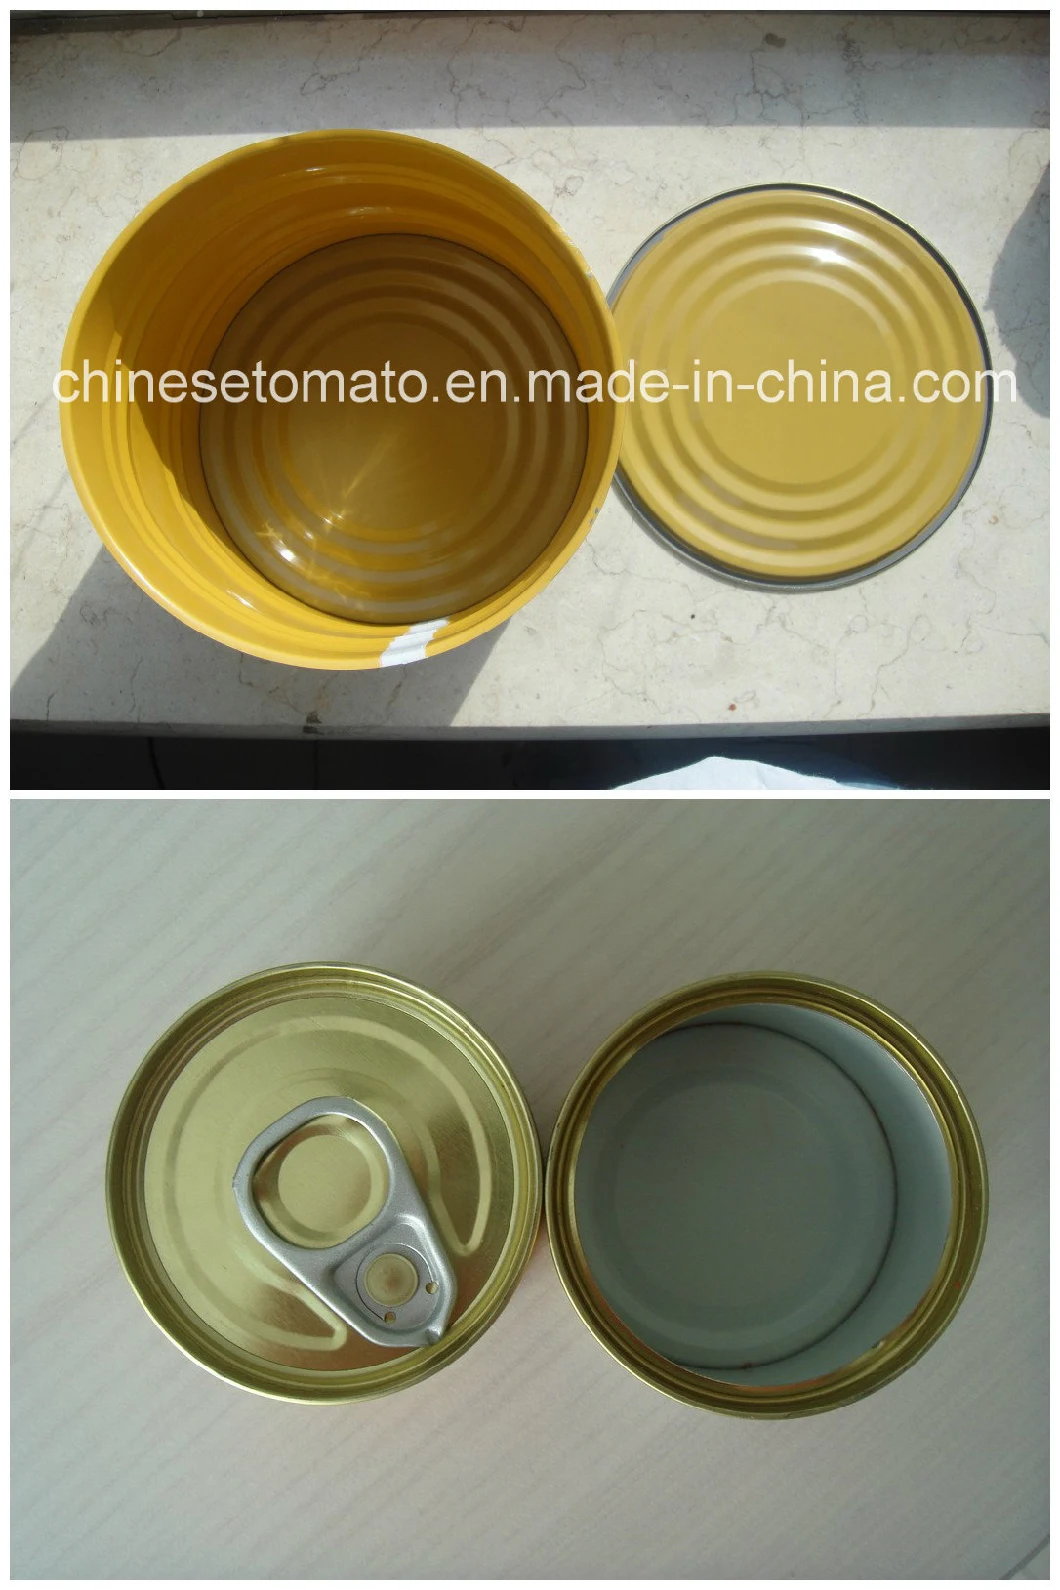 Tomato Paste China Supplier Hebei Tomato Tmt